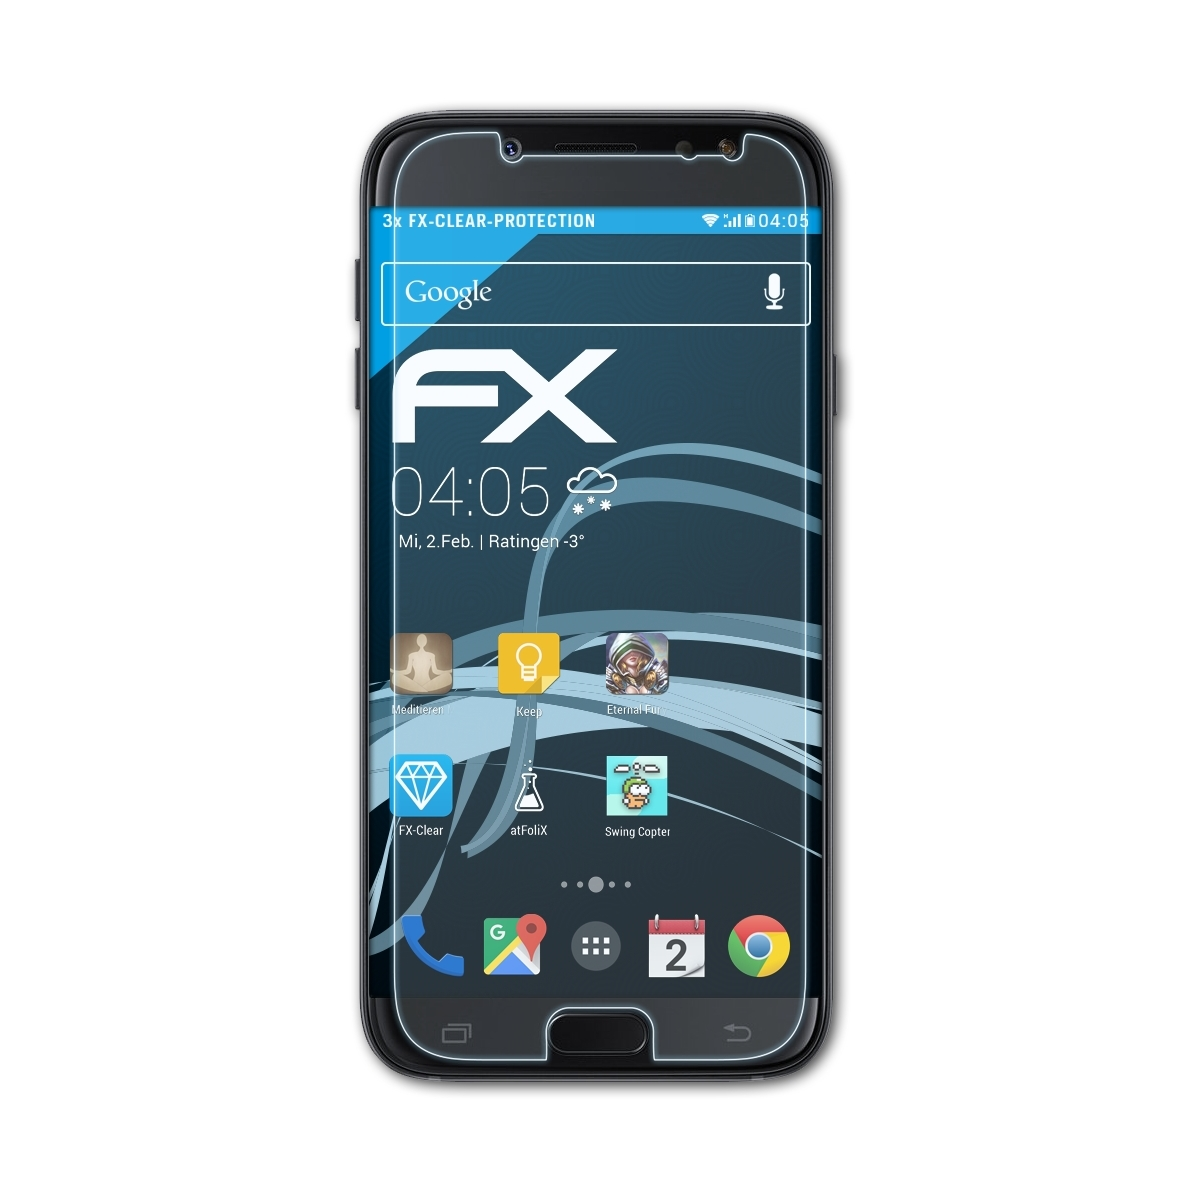 ATFOLIX 3x FX-Clear Displayschutz(für Samsung (2017) Duos) Galaxy J5